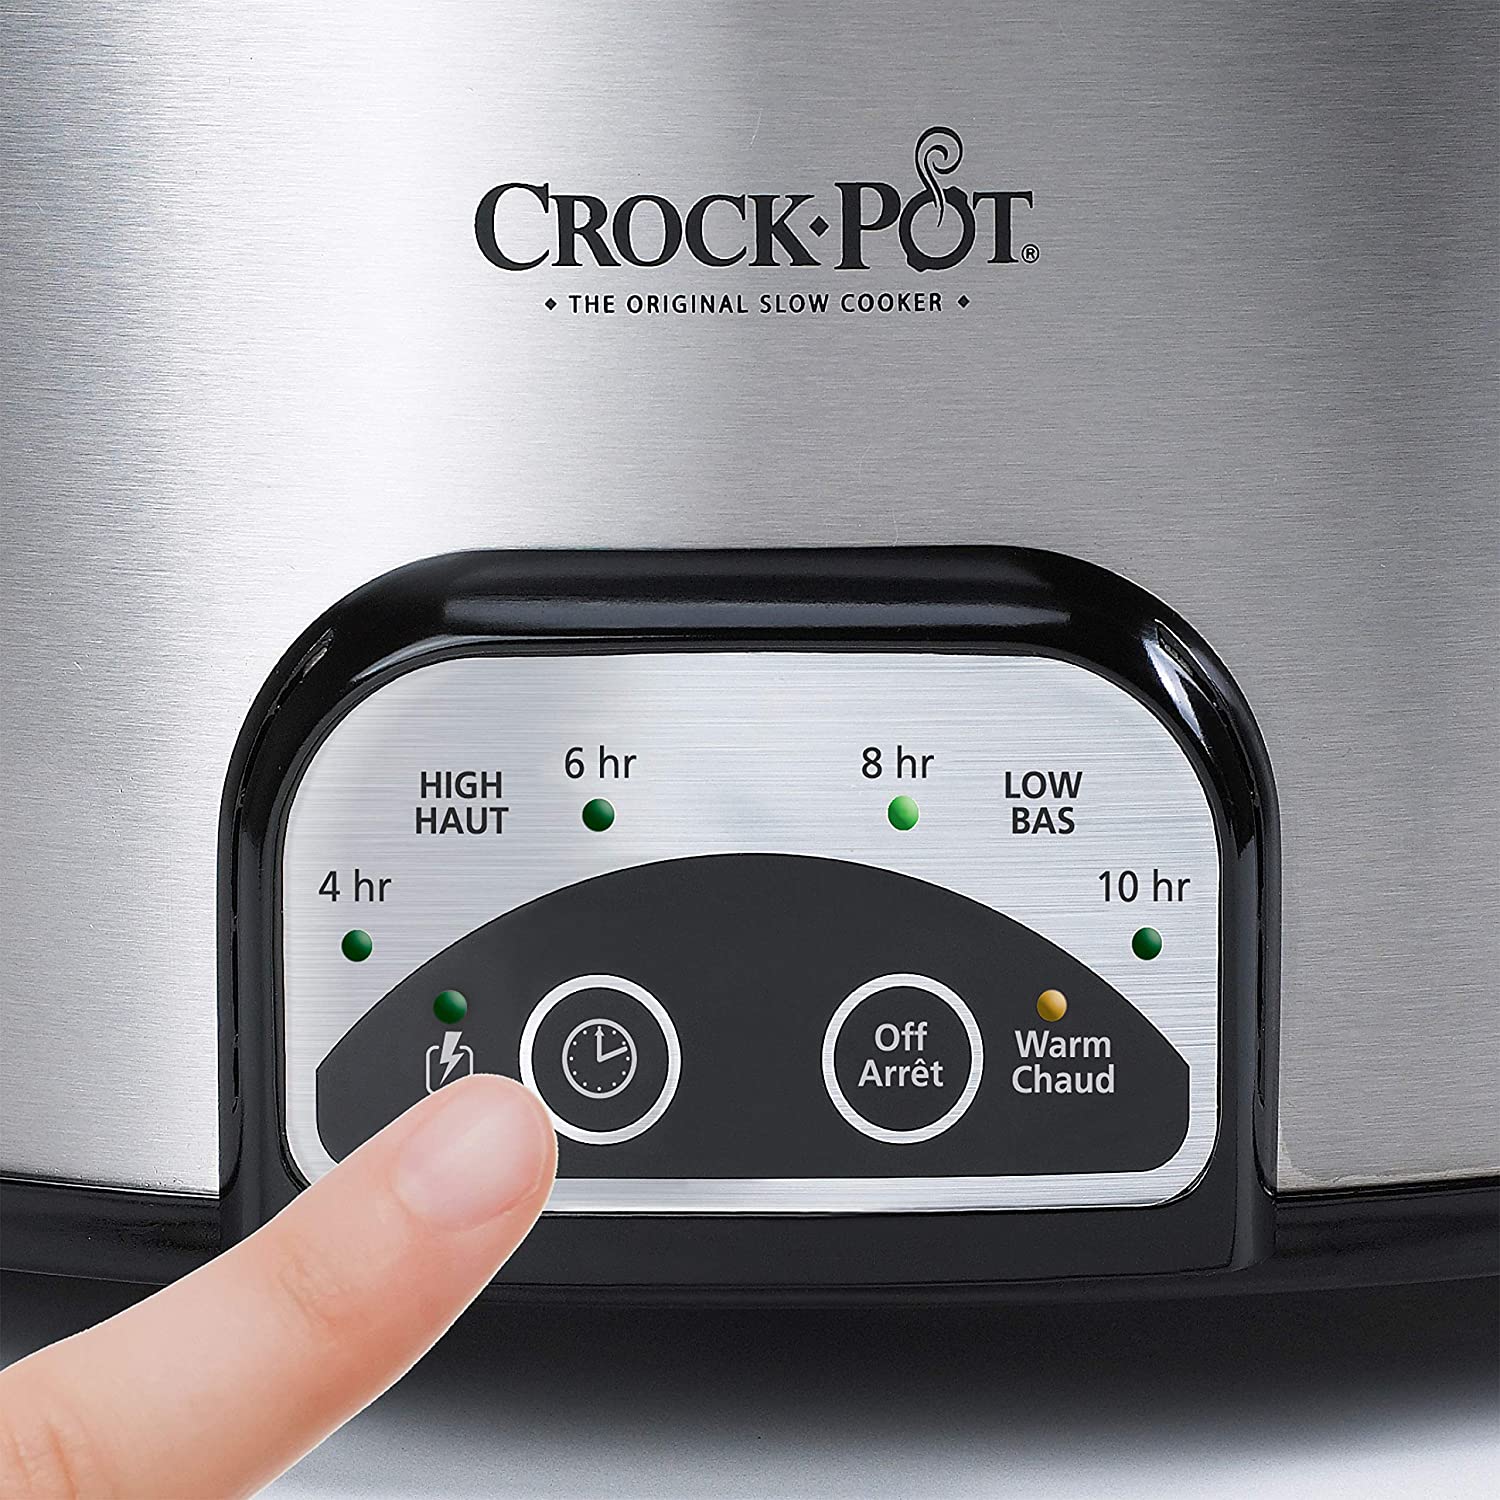 Crock-pot SCCPVS642-S Choose-A-Crock Programmable Slow Cooker, 6 quart/4  quart/2 x 1.5 quart, Silver 